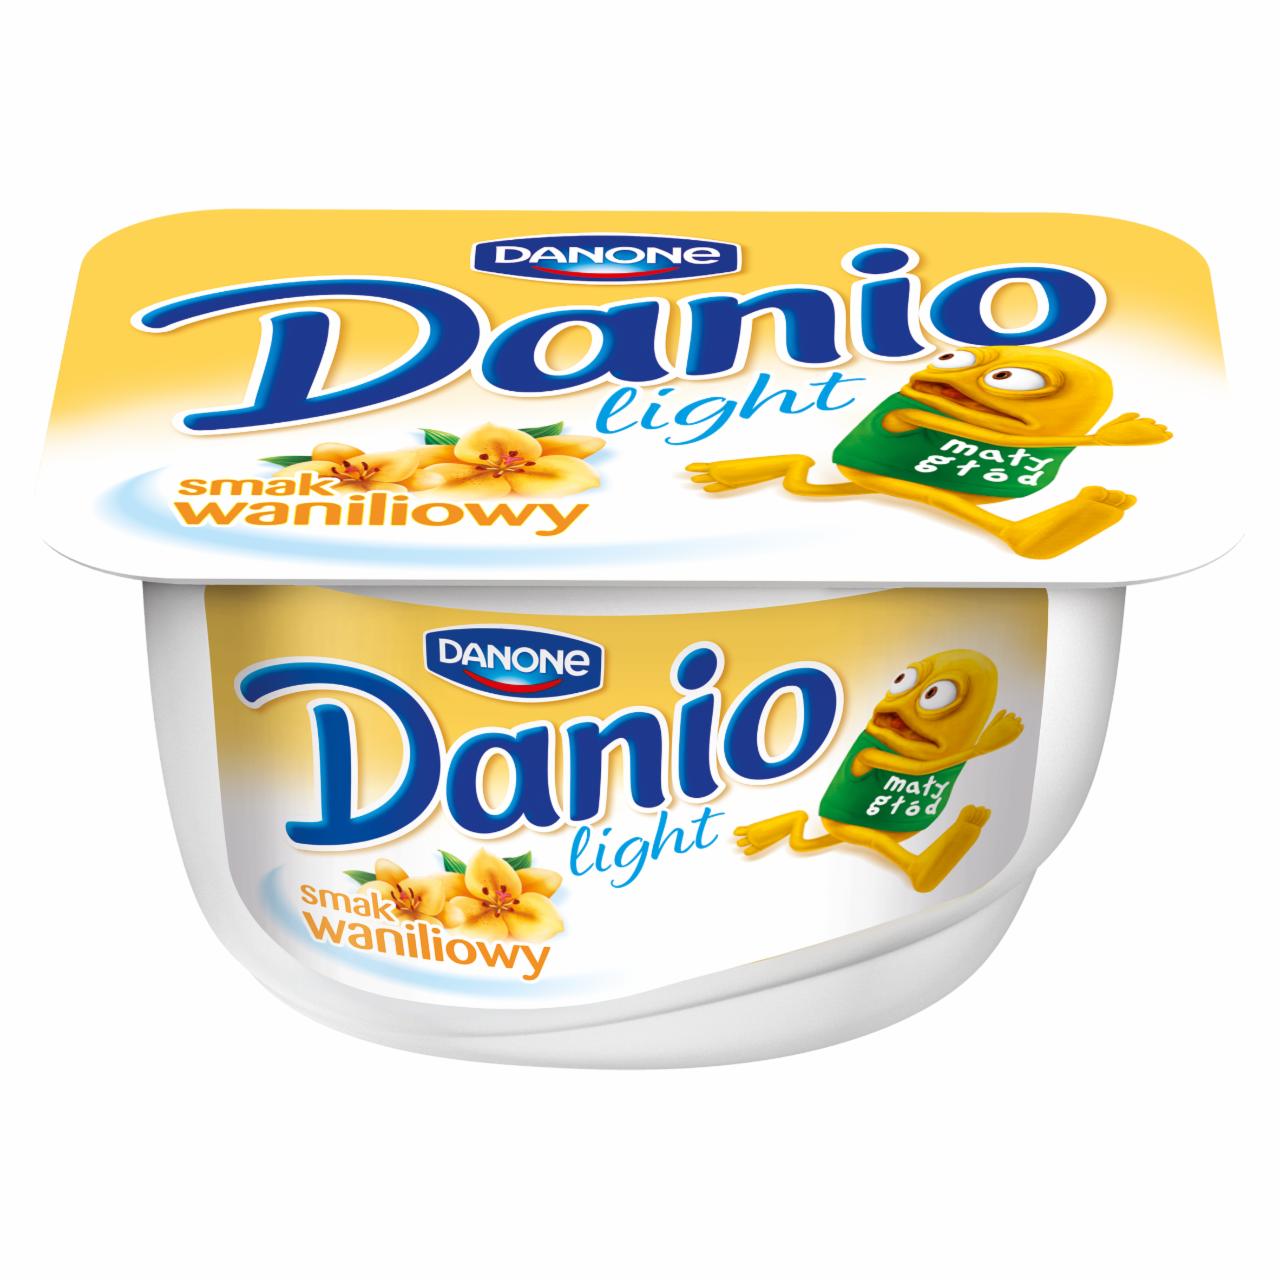 Zdjęcia - Danone Danio light smak waniliowy Serek homogenizowany 150 g